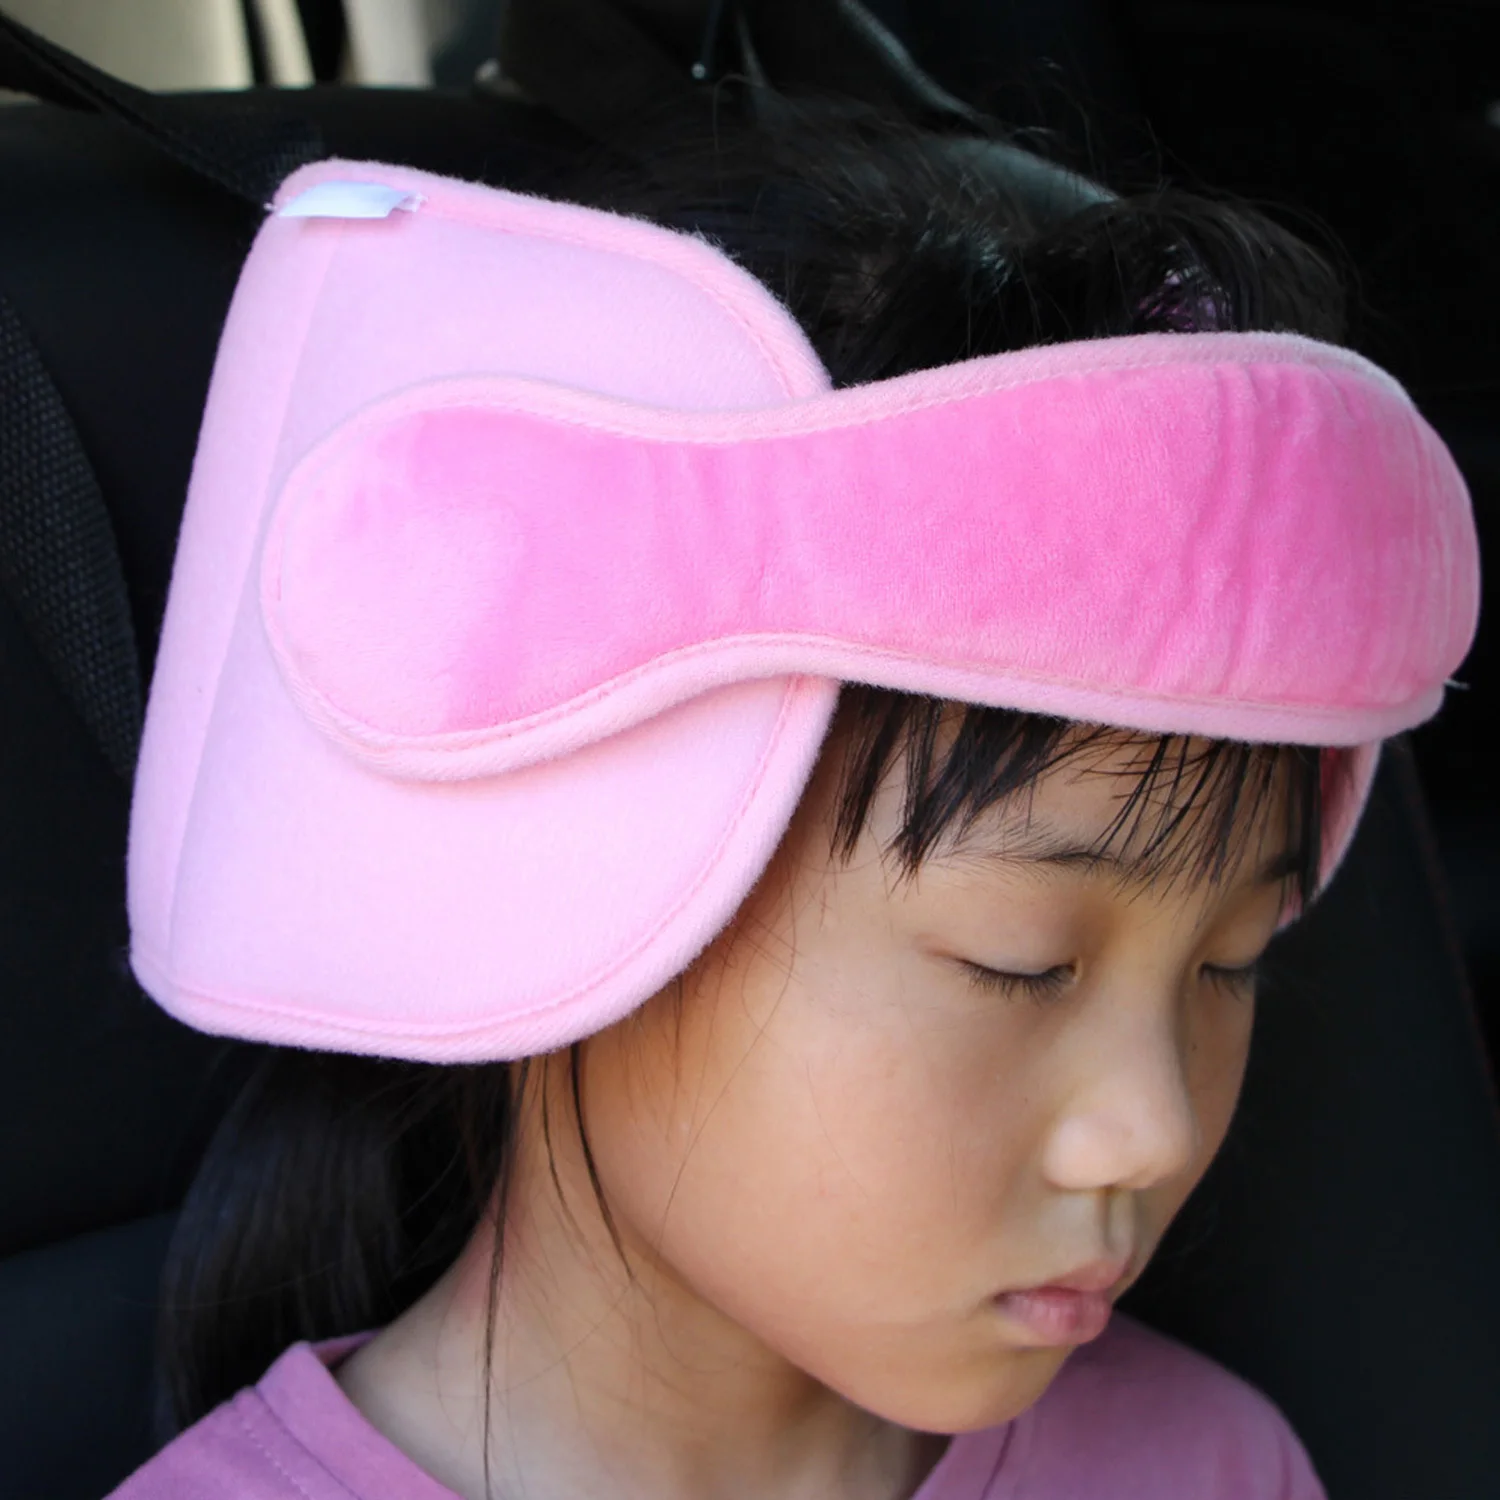 Дети Глава шеи Поддержка Регулируемый мягкий удобный безопасное детское сидение головы поддерживающий пояс браслет с ремнем держатель